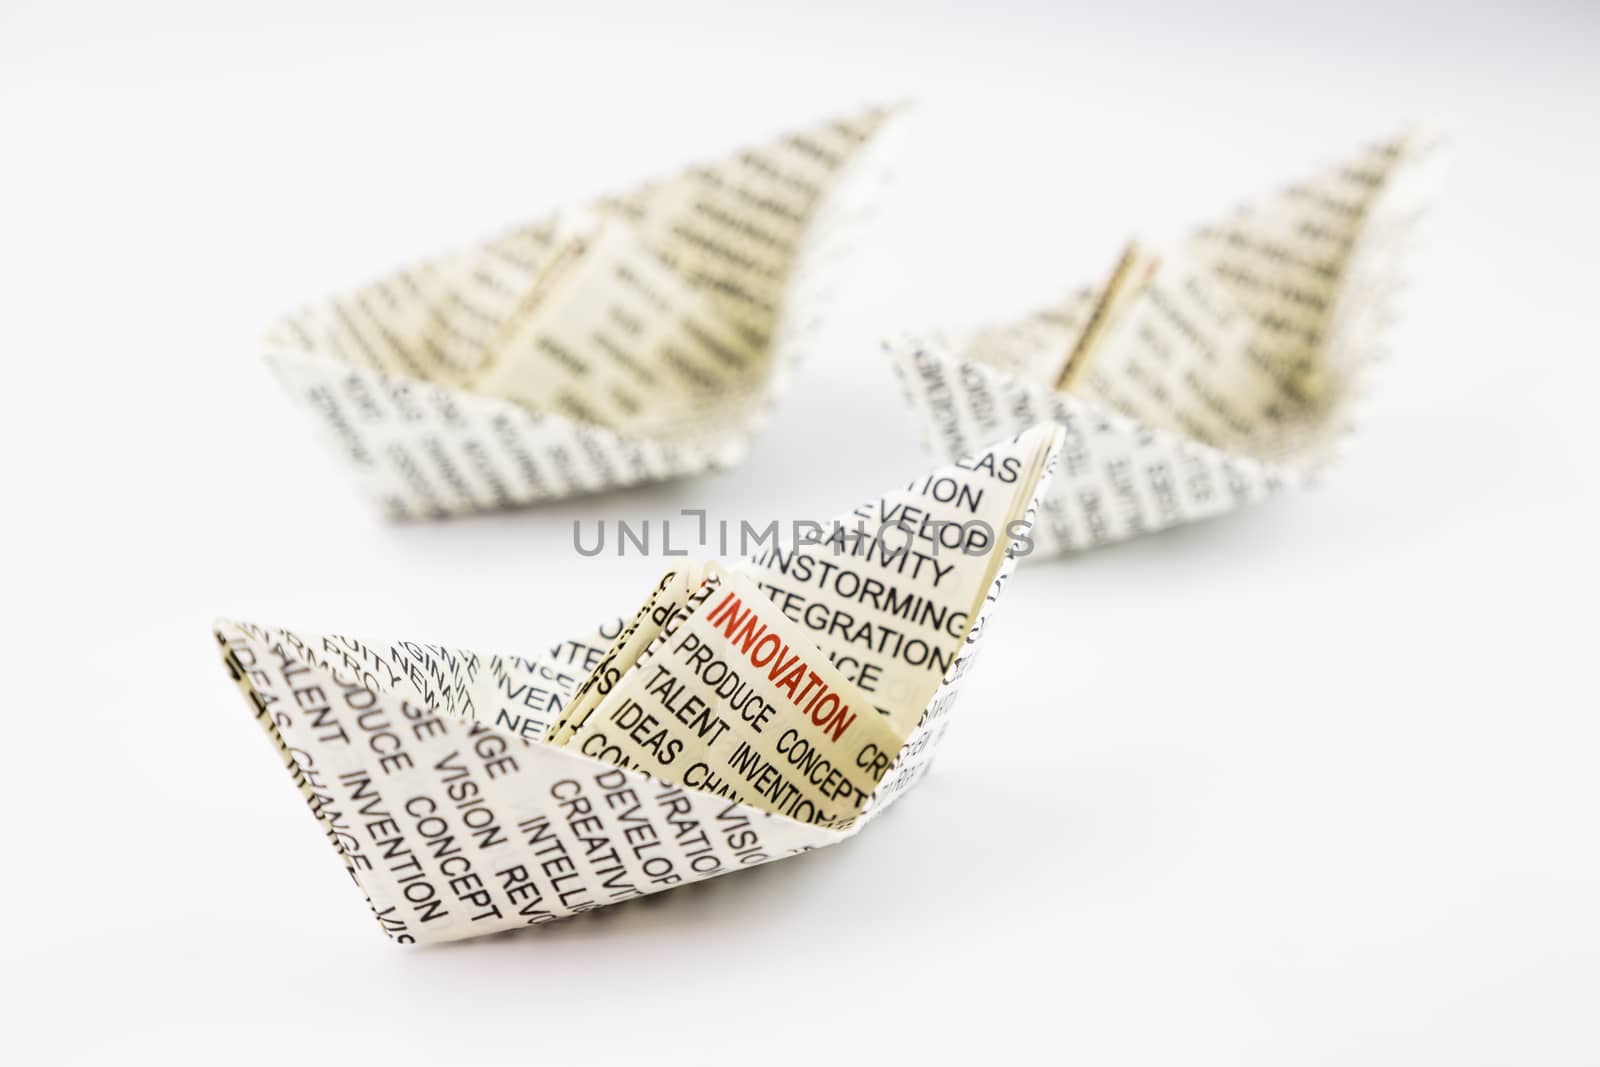 origami boats, innovation idea  by vinnstock